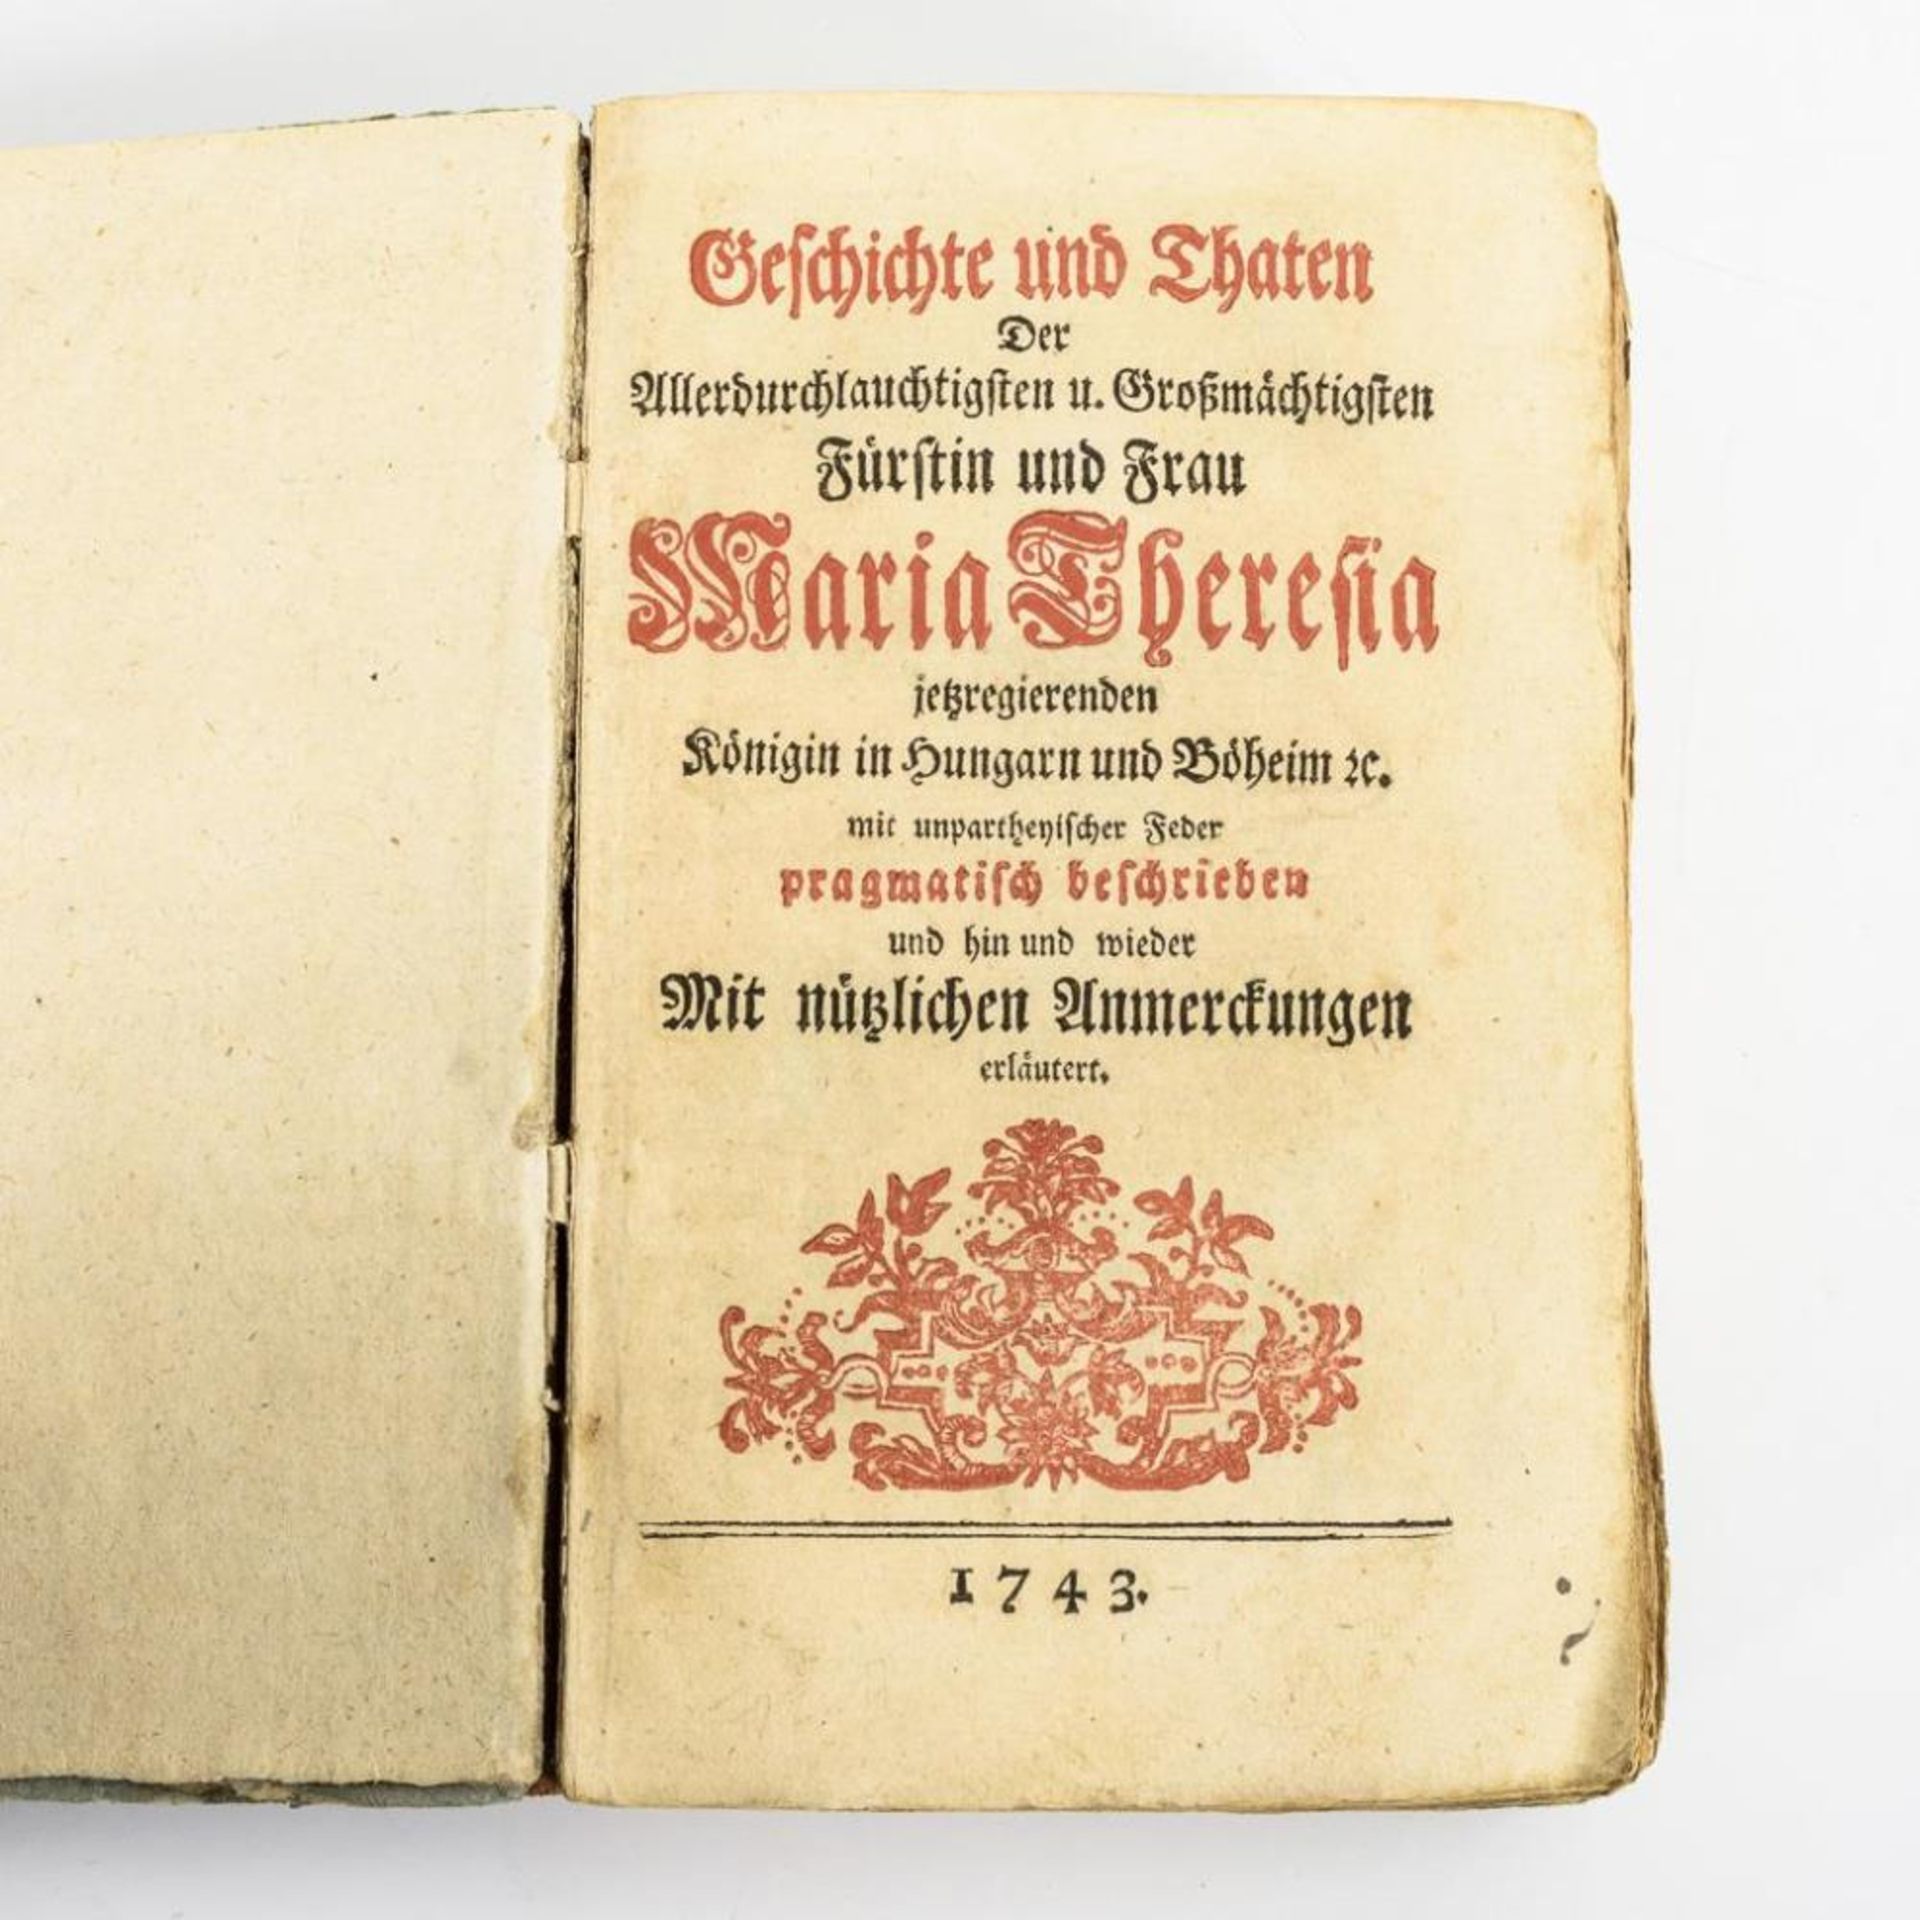 "Geschichte und Thaten ... Fürstin und Frau Maria Theresia".